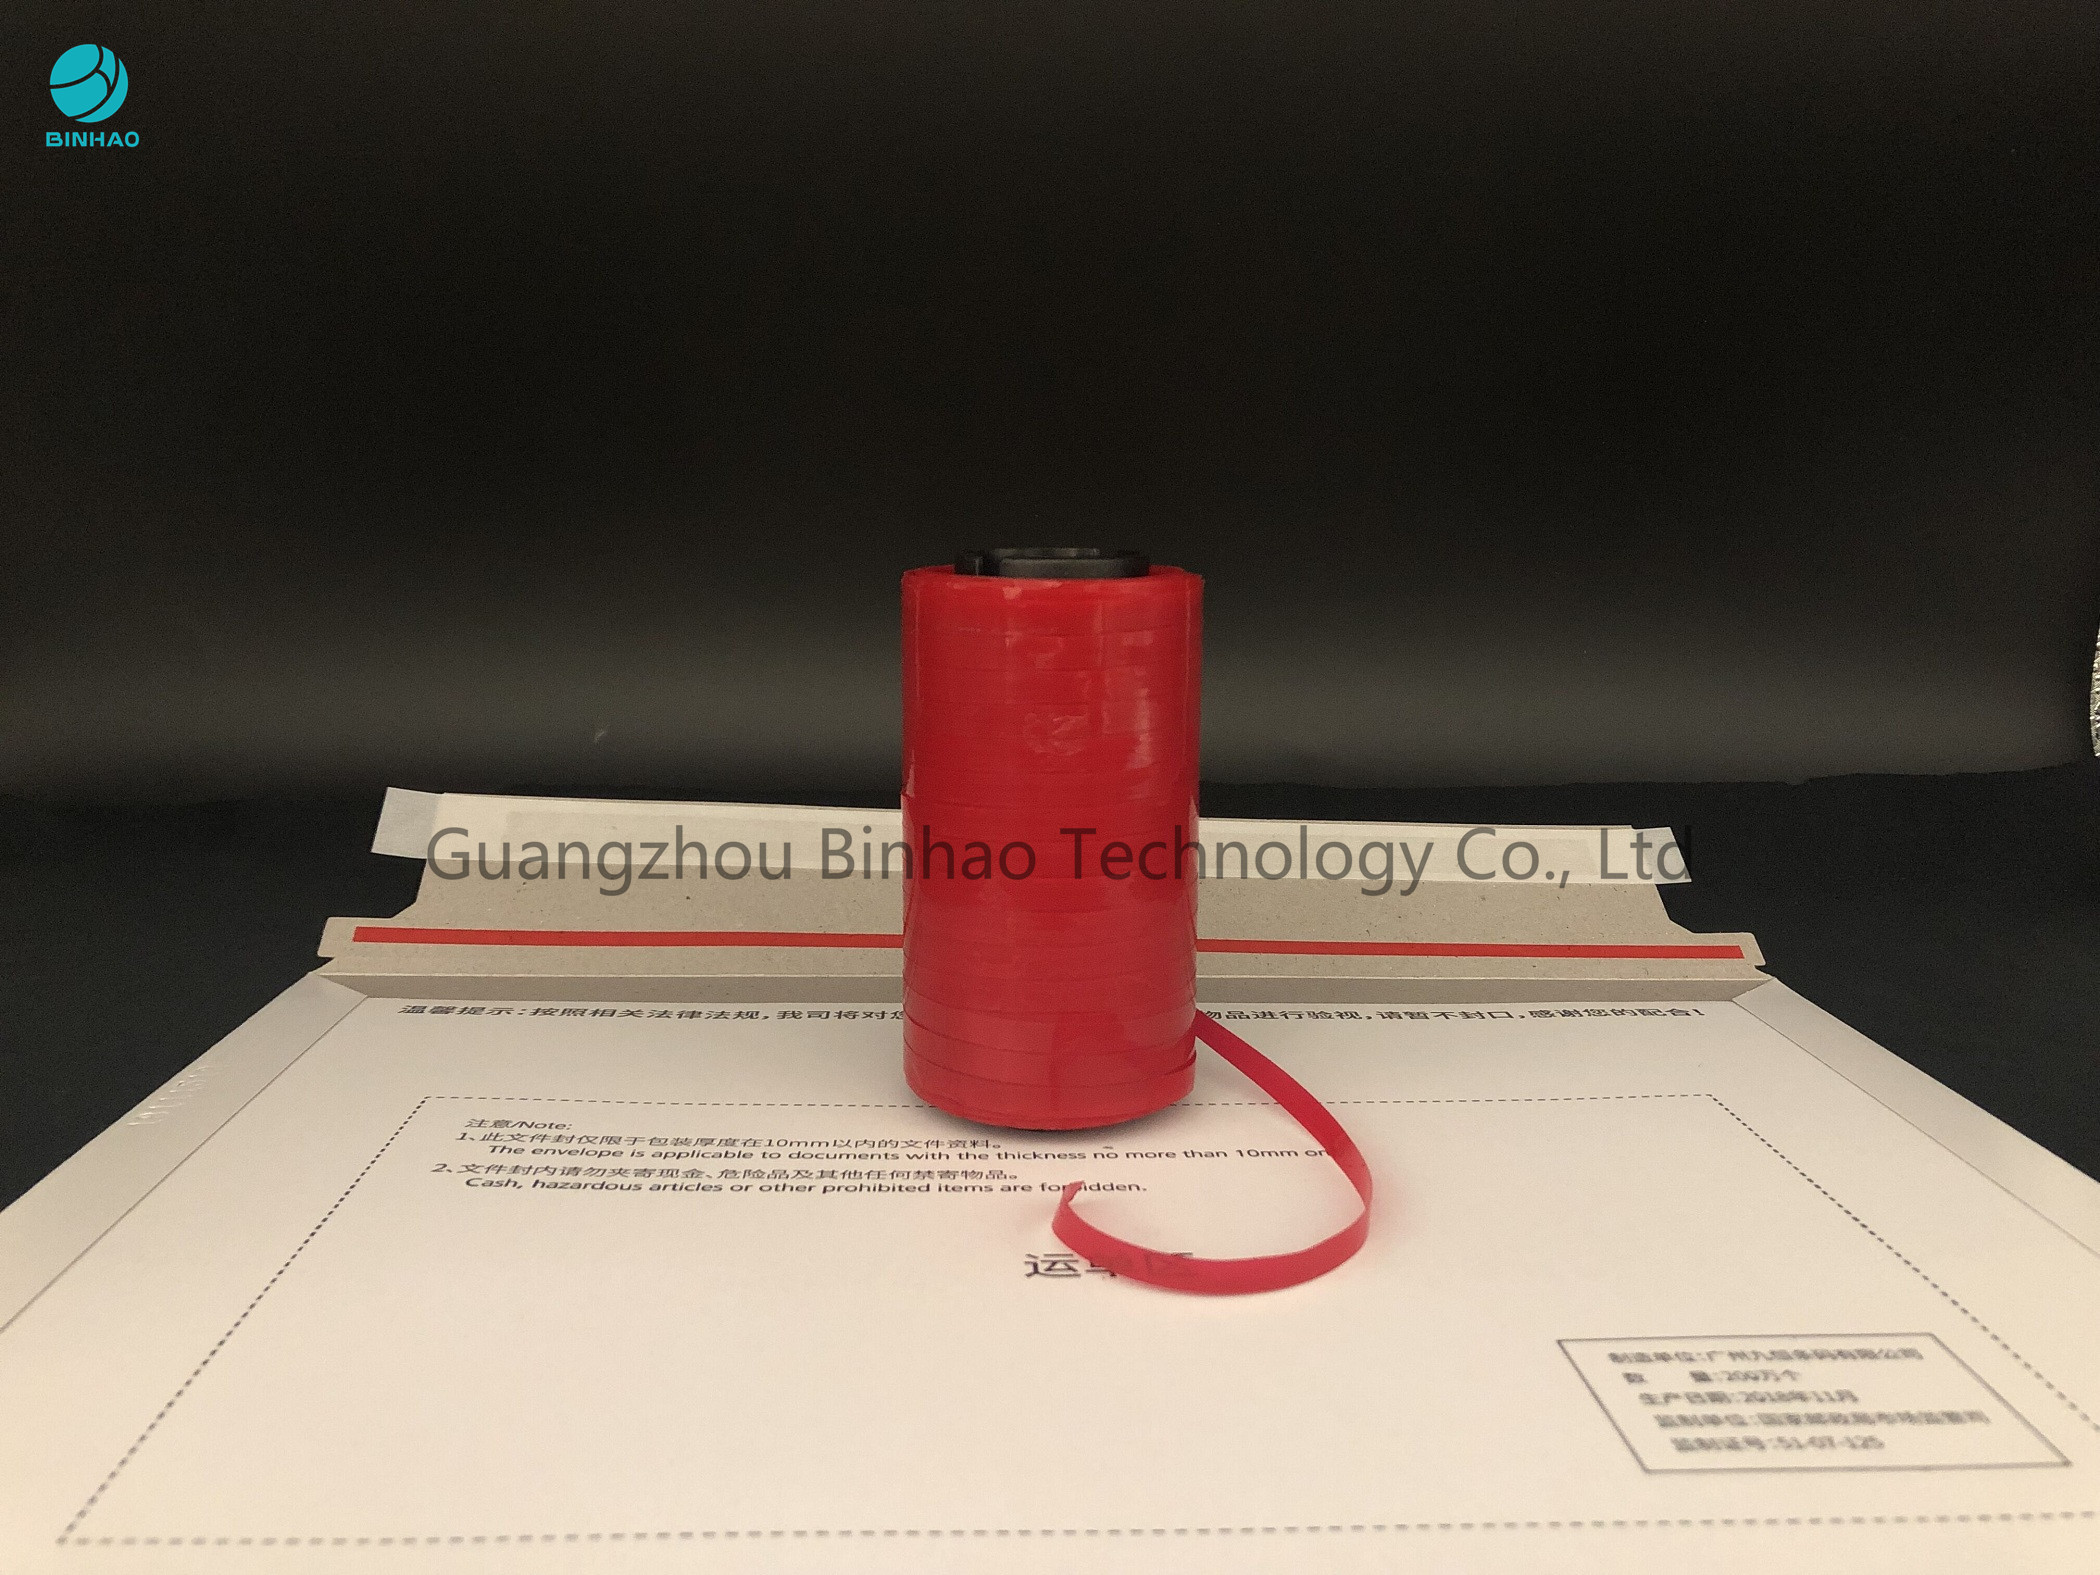 4mm öffnen sich selbstklebendes Rot MOPP-Tabak-Riss-Streifen-Band für die verpackende und einfache Kurier-Tasche